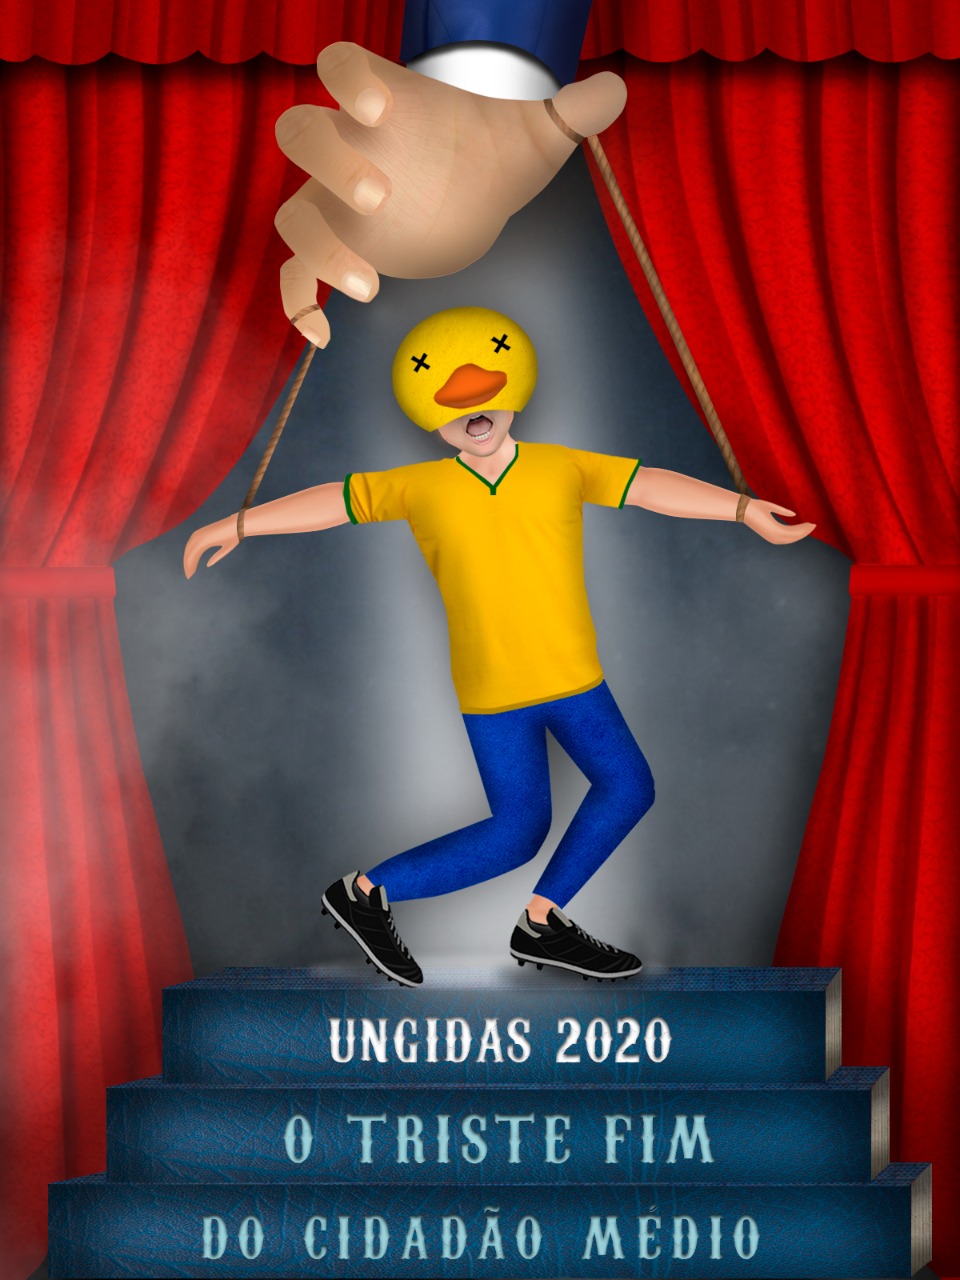 Ungidas apresenta “O triste fim do cidadão médio” em seu enredo de retorno ao Carnaval Virtual